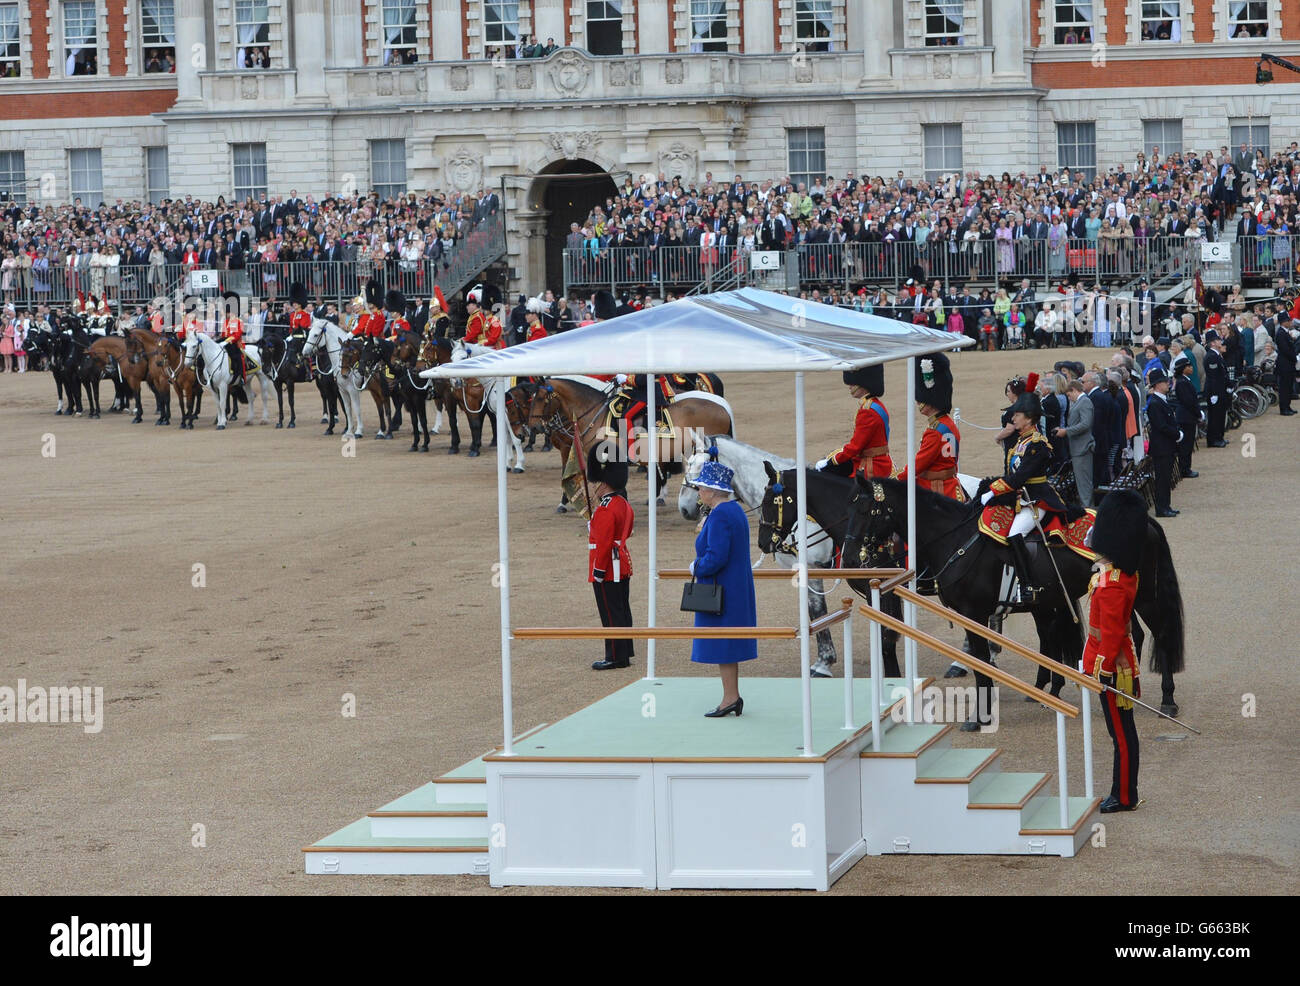 La reine Elizabeth II écoute l'hymne national au Horse Guards Parade, Londres, pendant le Trooping the Color. Banque D'Images